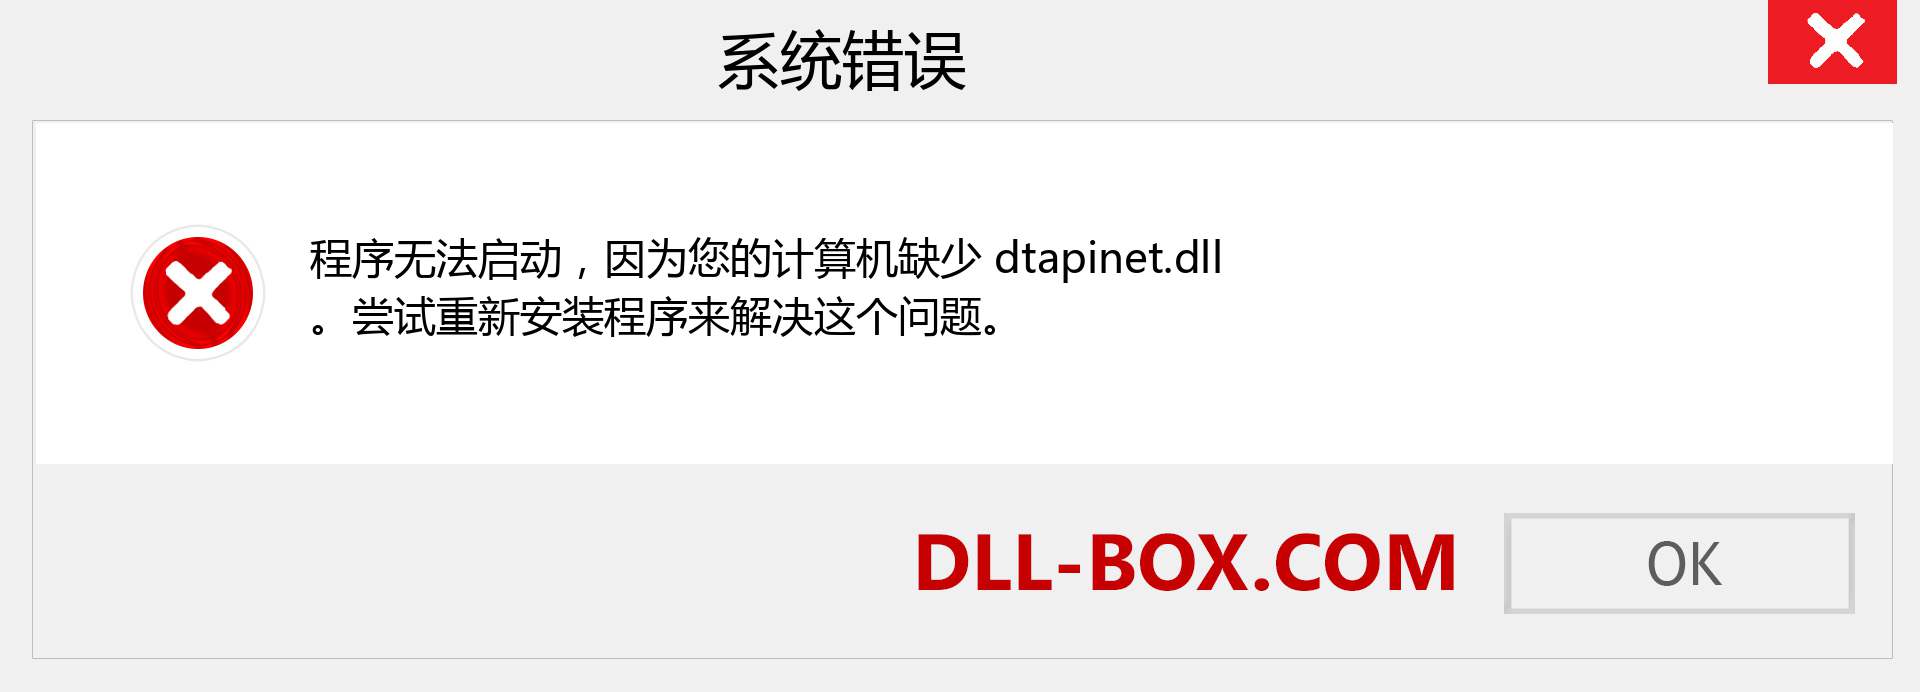 dtapinet.dll 文件丢失？。 适用于 Windows 7、8、10 的下载 - 修复 Windows、照片、图像上的 dtapinet dll 丢失错误